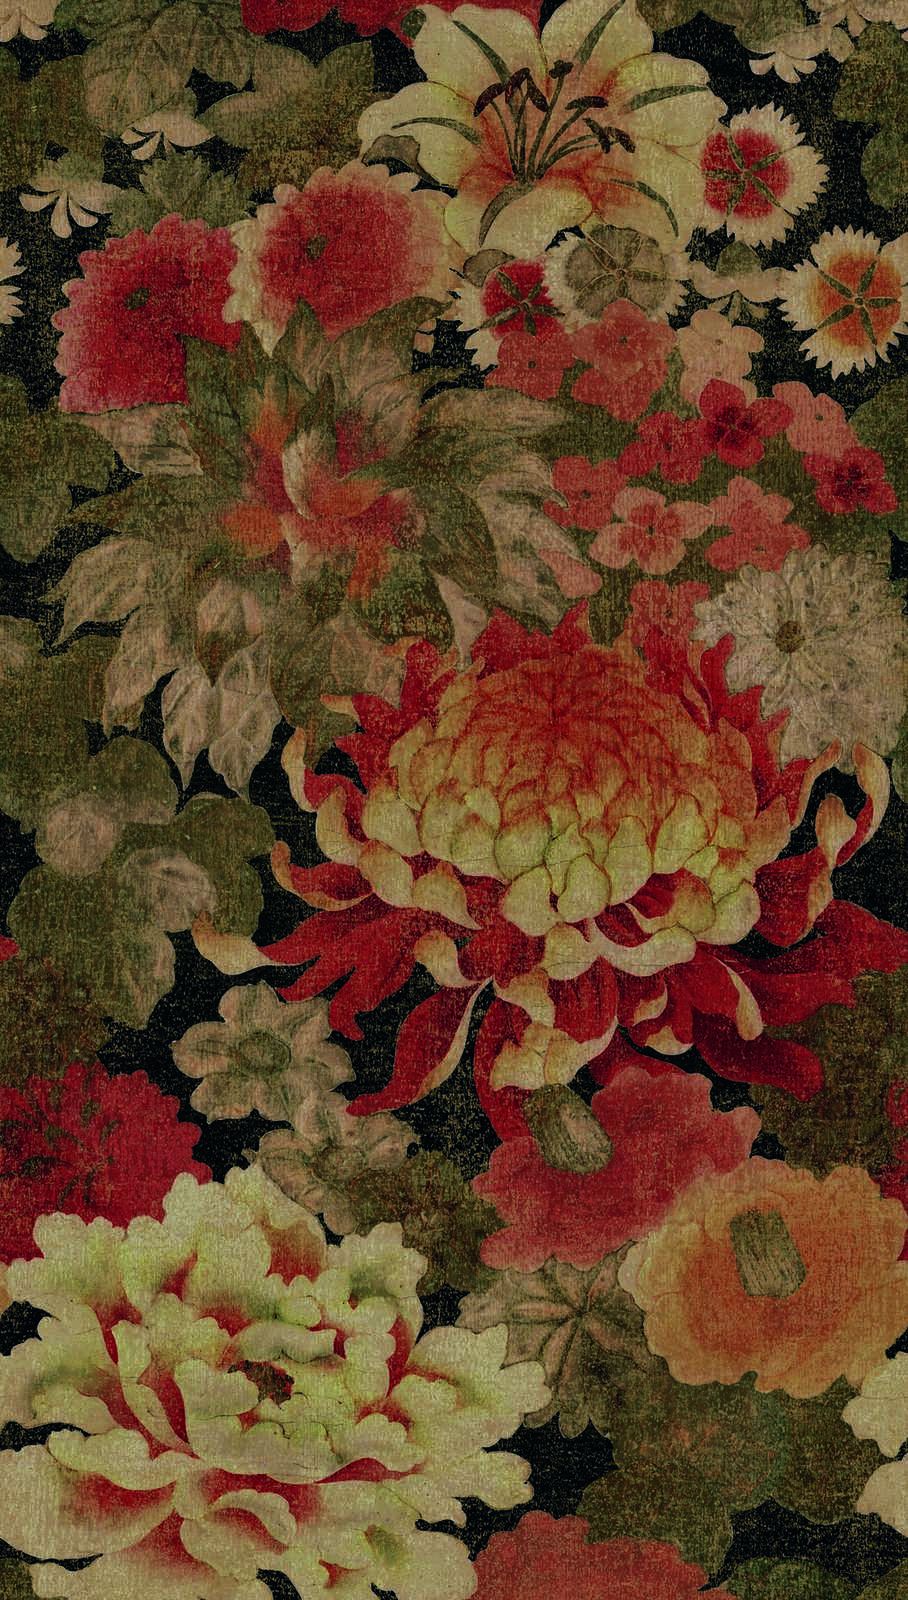             Vliesbehang met groot bloemenpatroon - beige, rood, groen
        